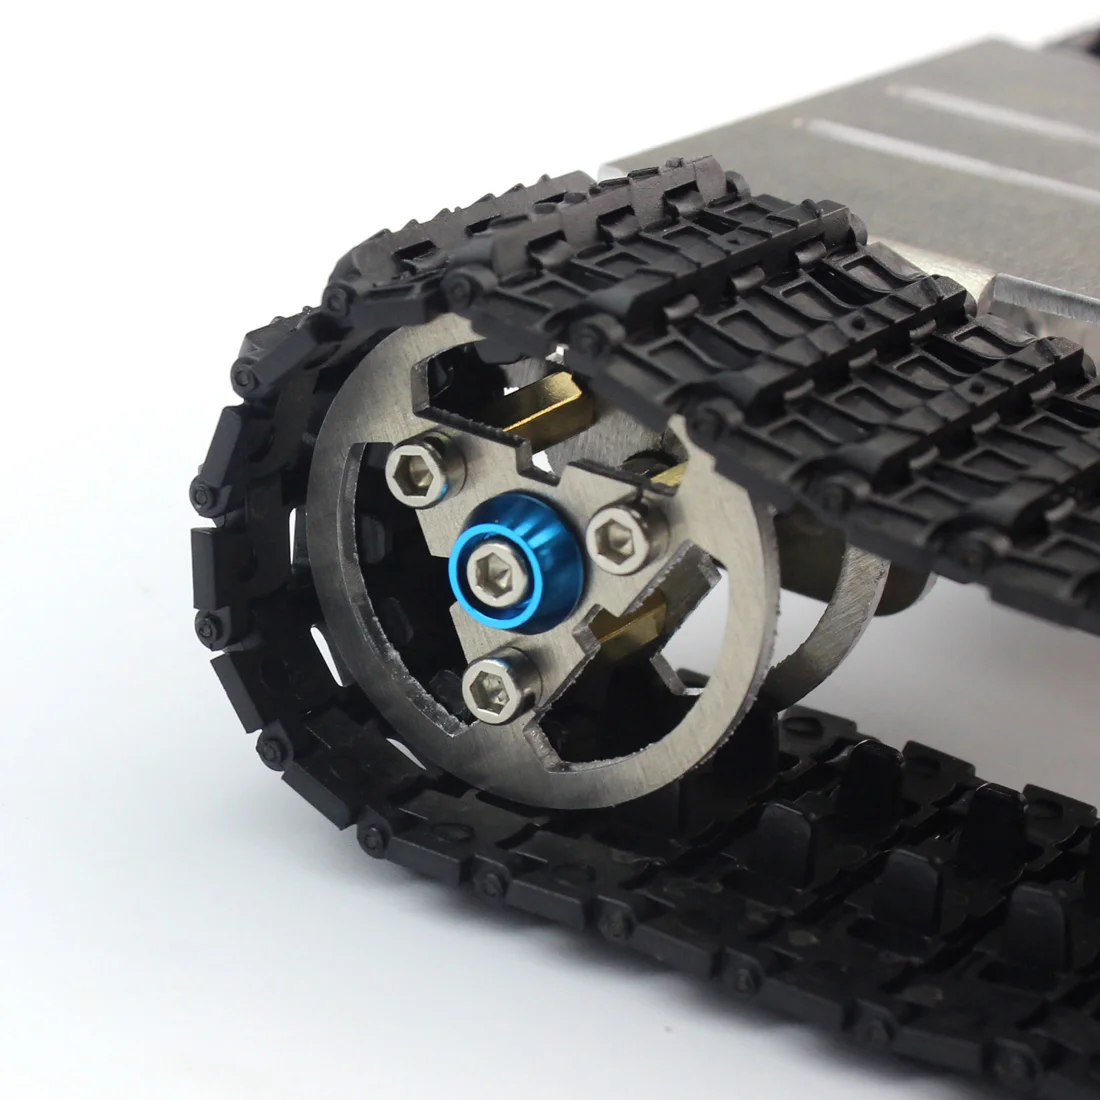 JMT Смарт трек автомобиль 2wd трекер гусеничные роботы DIY шасси Танк гусеница платформа для Arduino